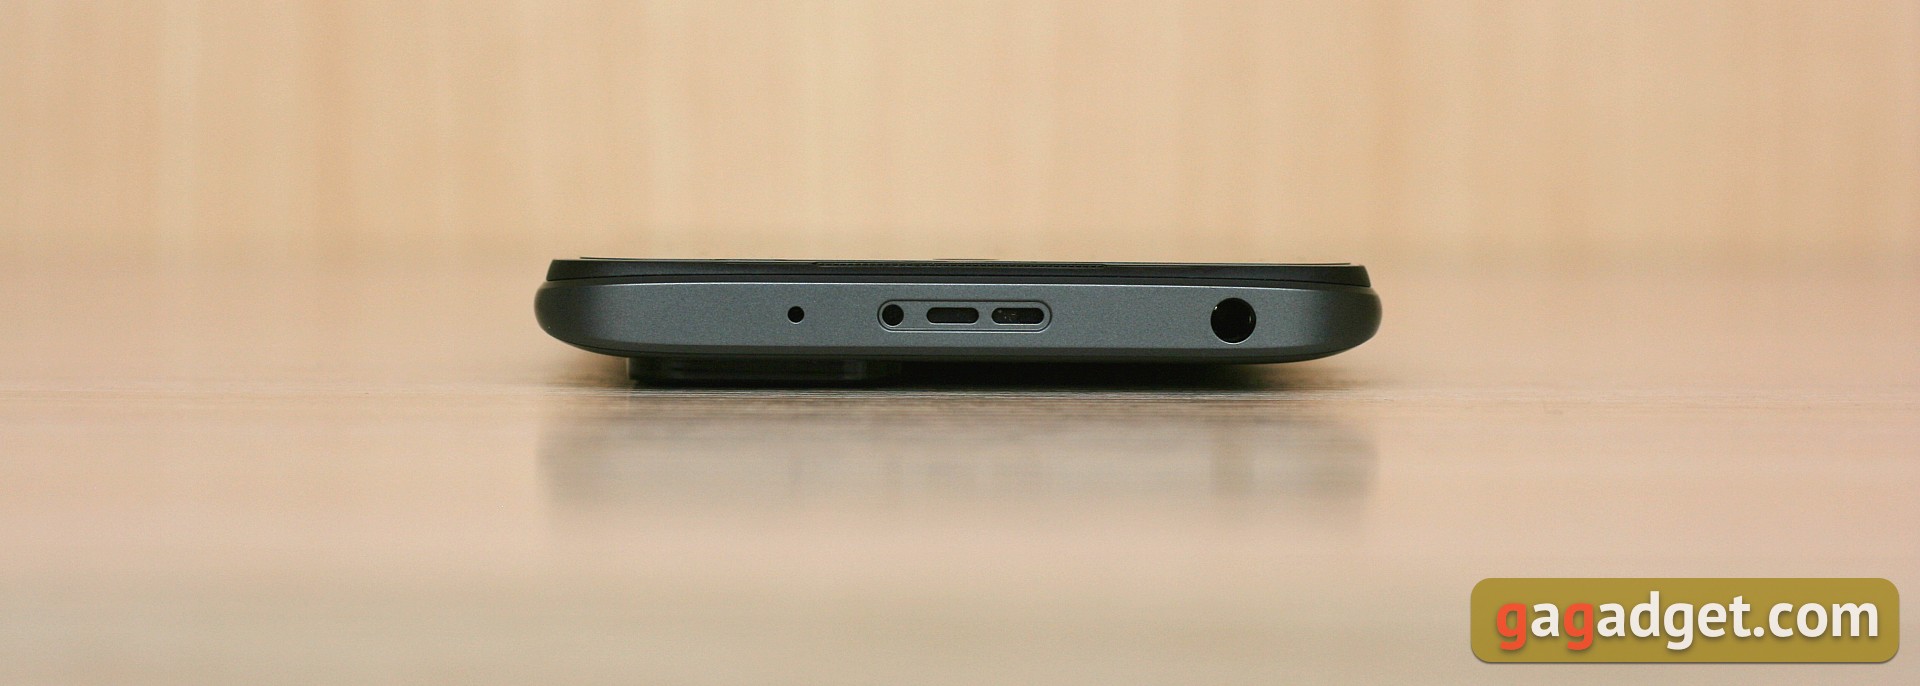 Recenzja Xiaomi Redmi 10: legendarny producent budżetowy, teraz z 50-megapikselowym aparatem-9